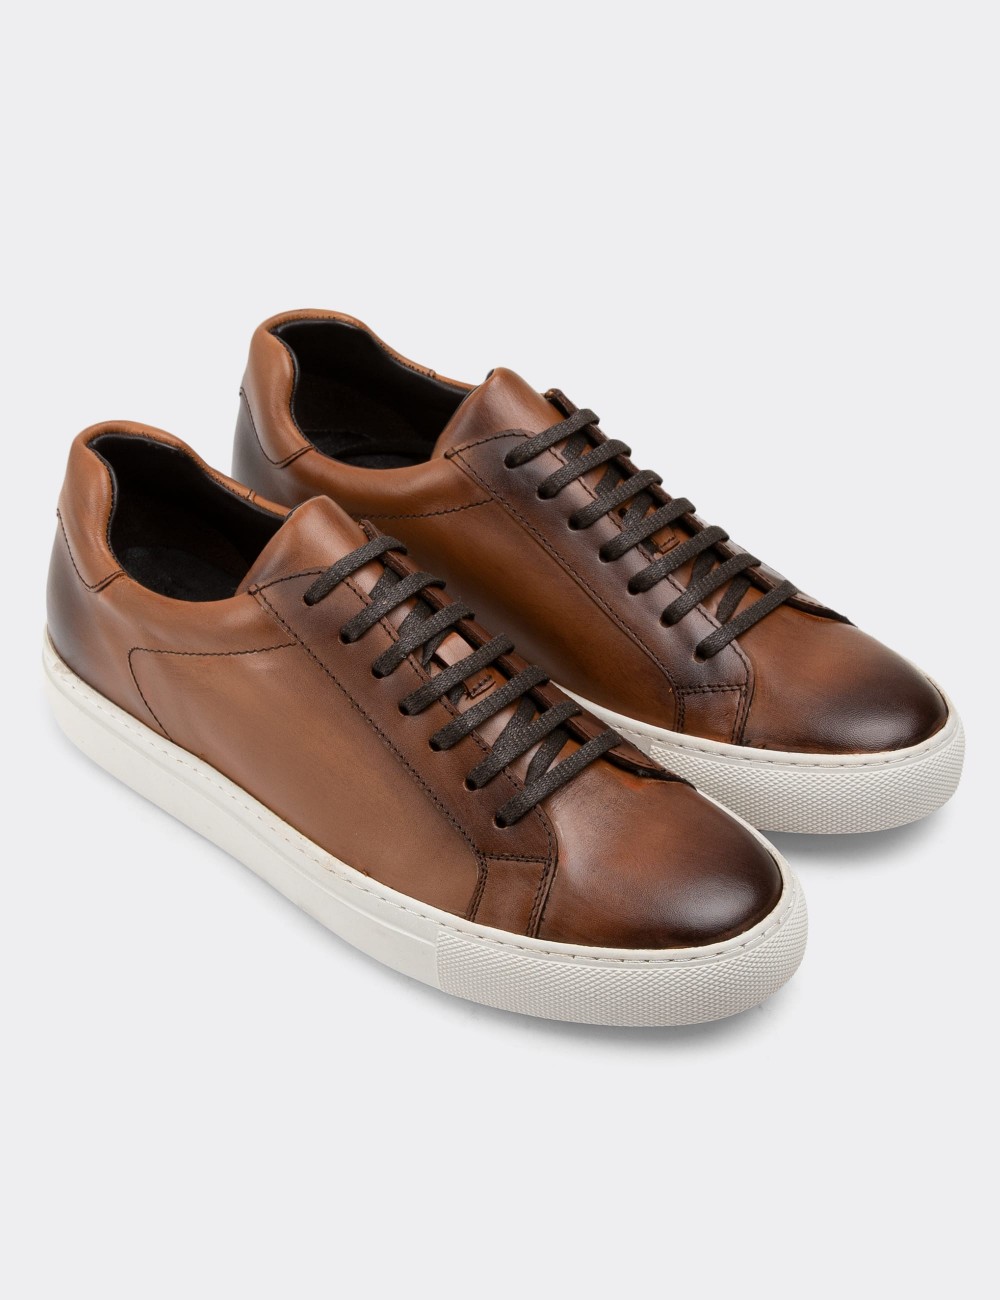 Tan Leather Sneakers - 01681MTBAC03